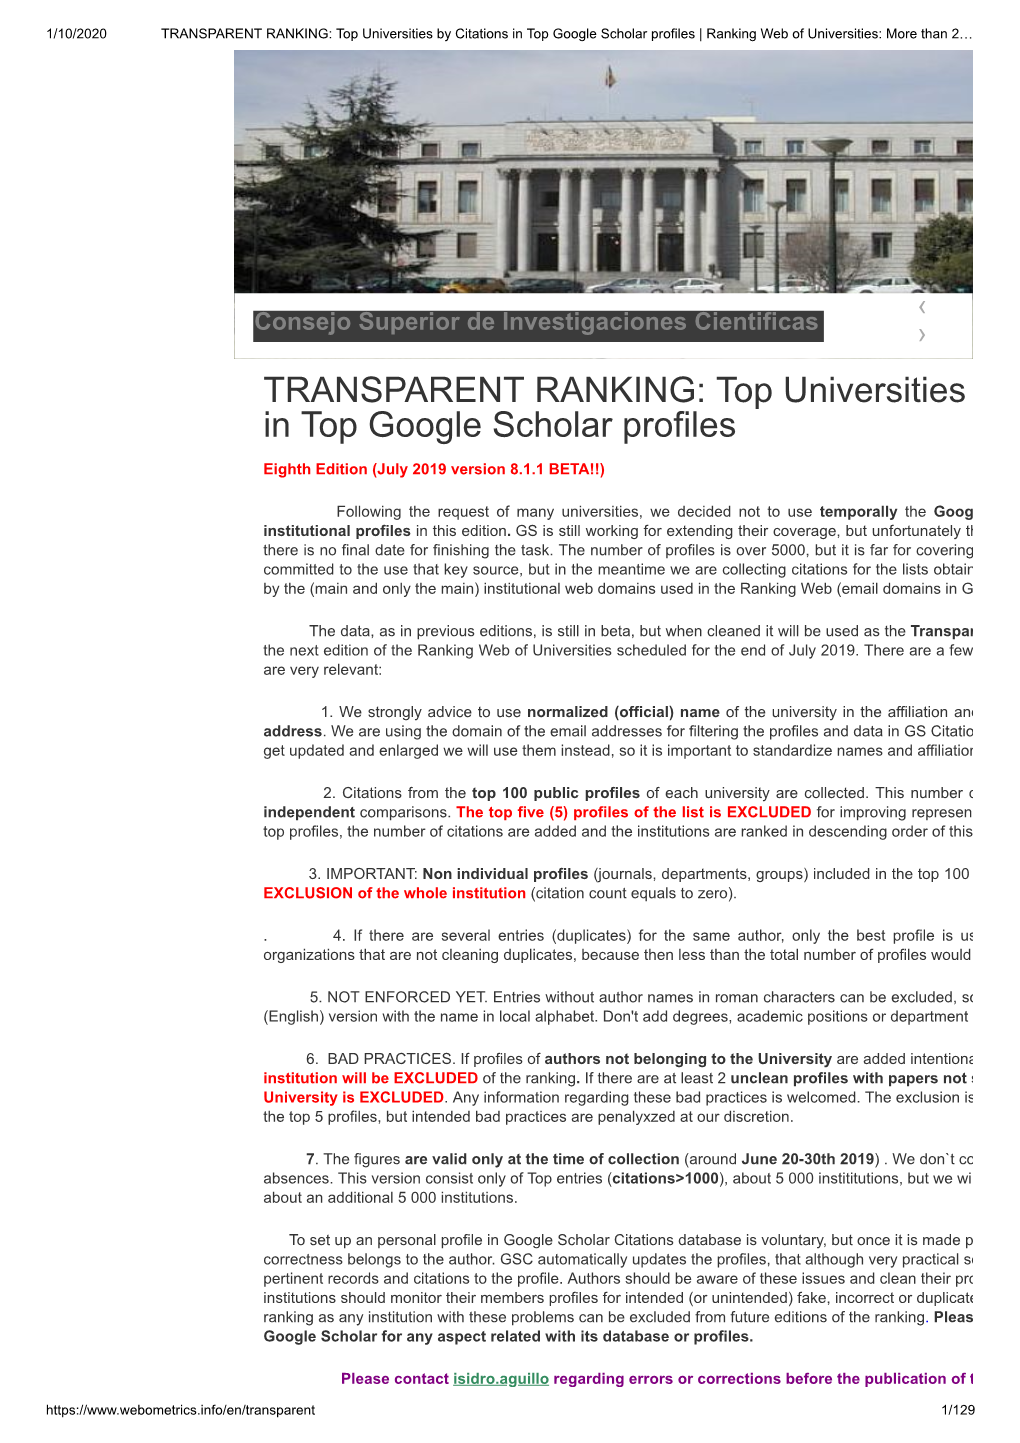 TRANSPARENT RANKING: Top Universities in Top Google Scholar Profiles